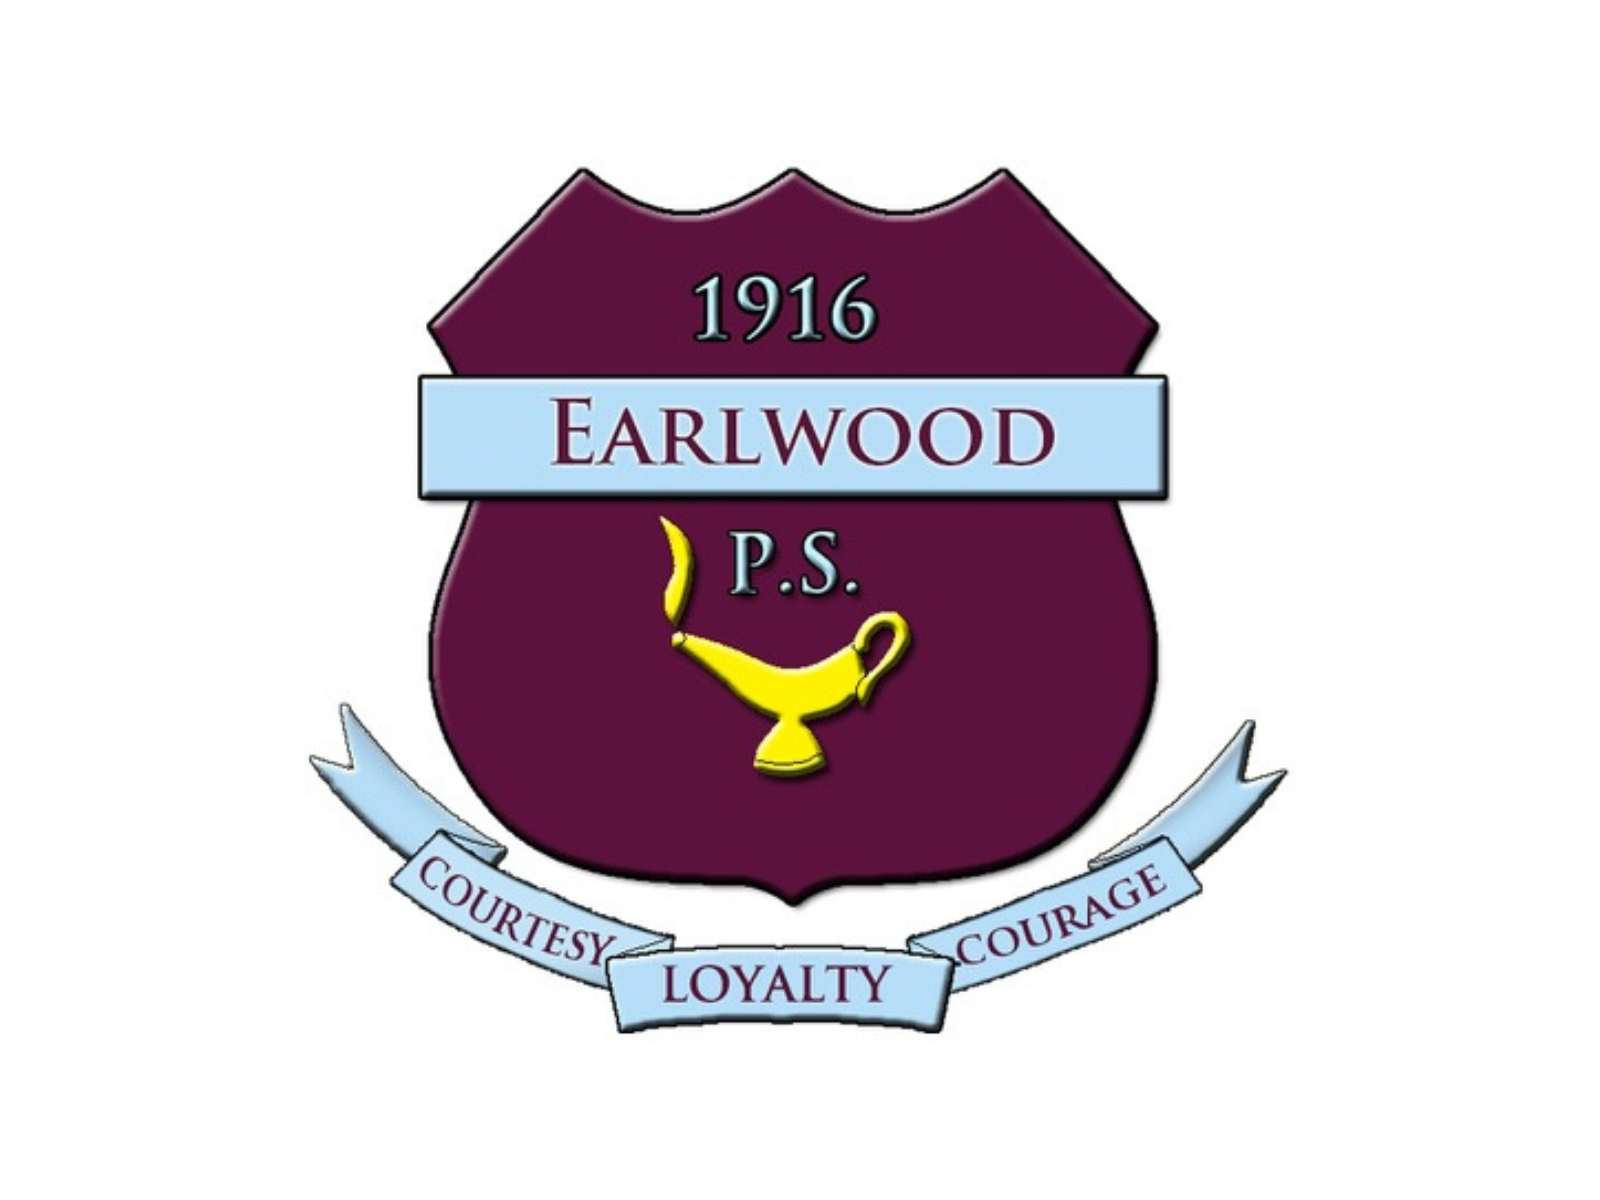 earlwood image